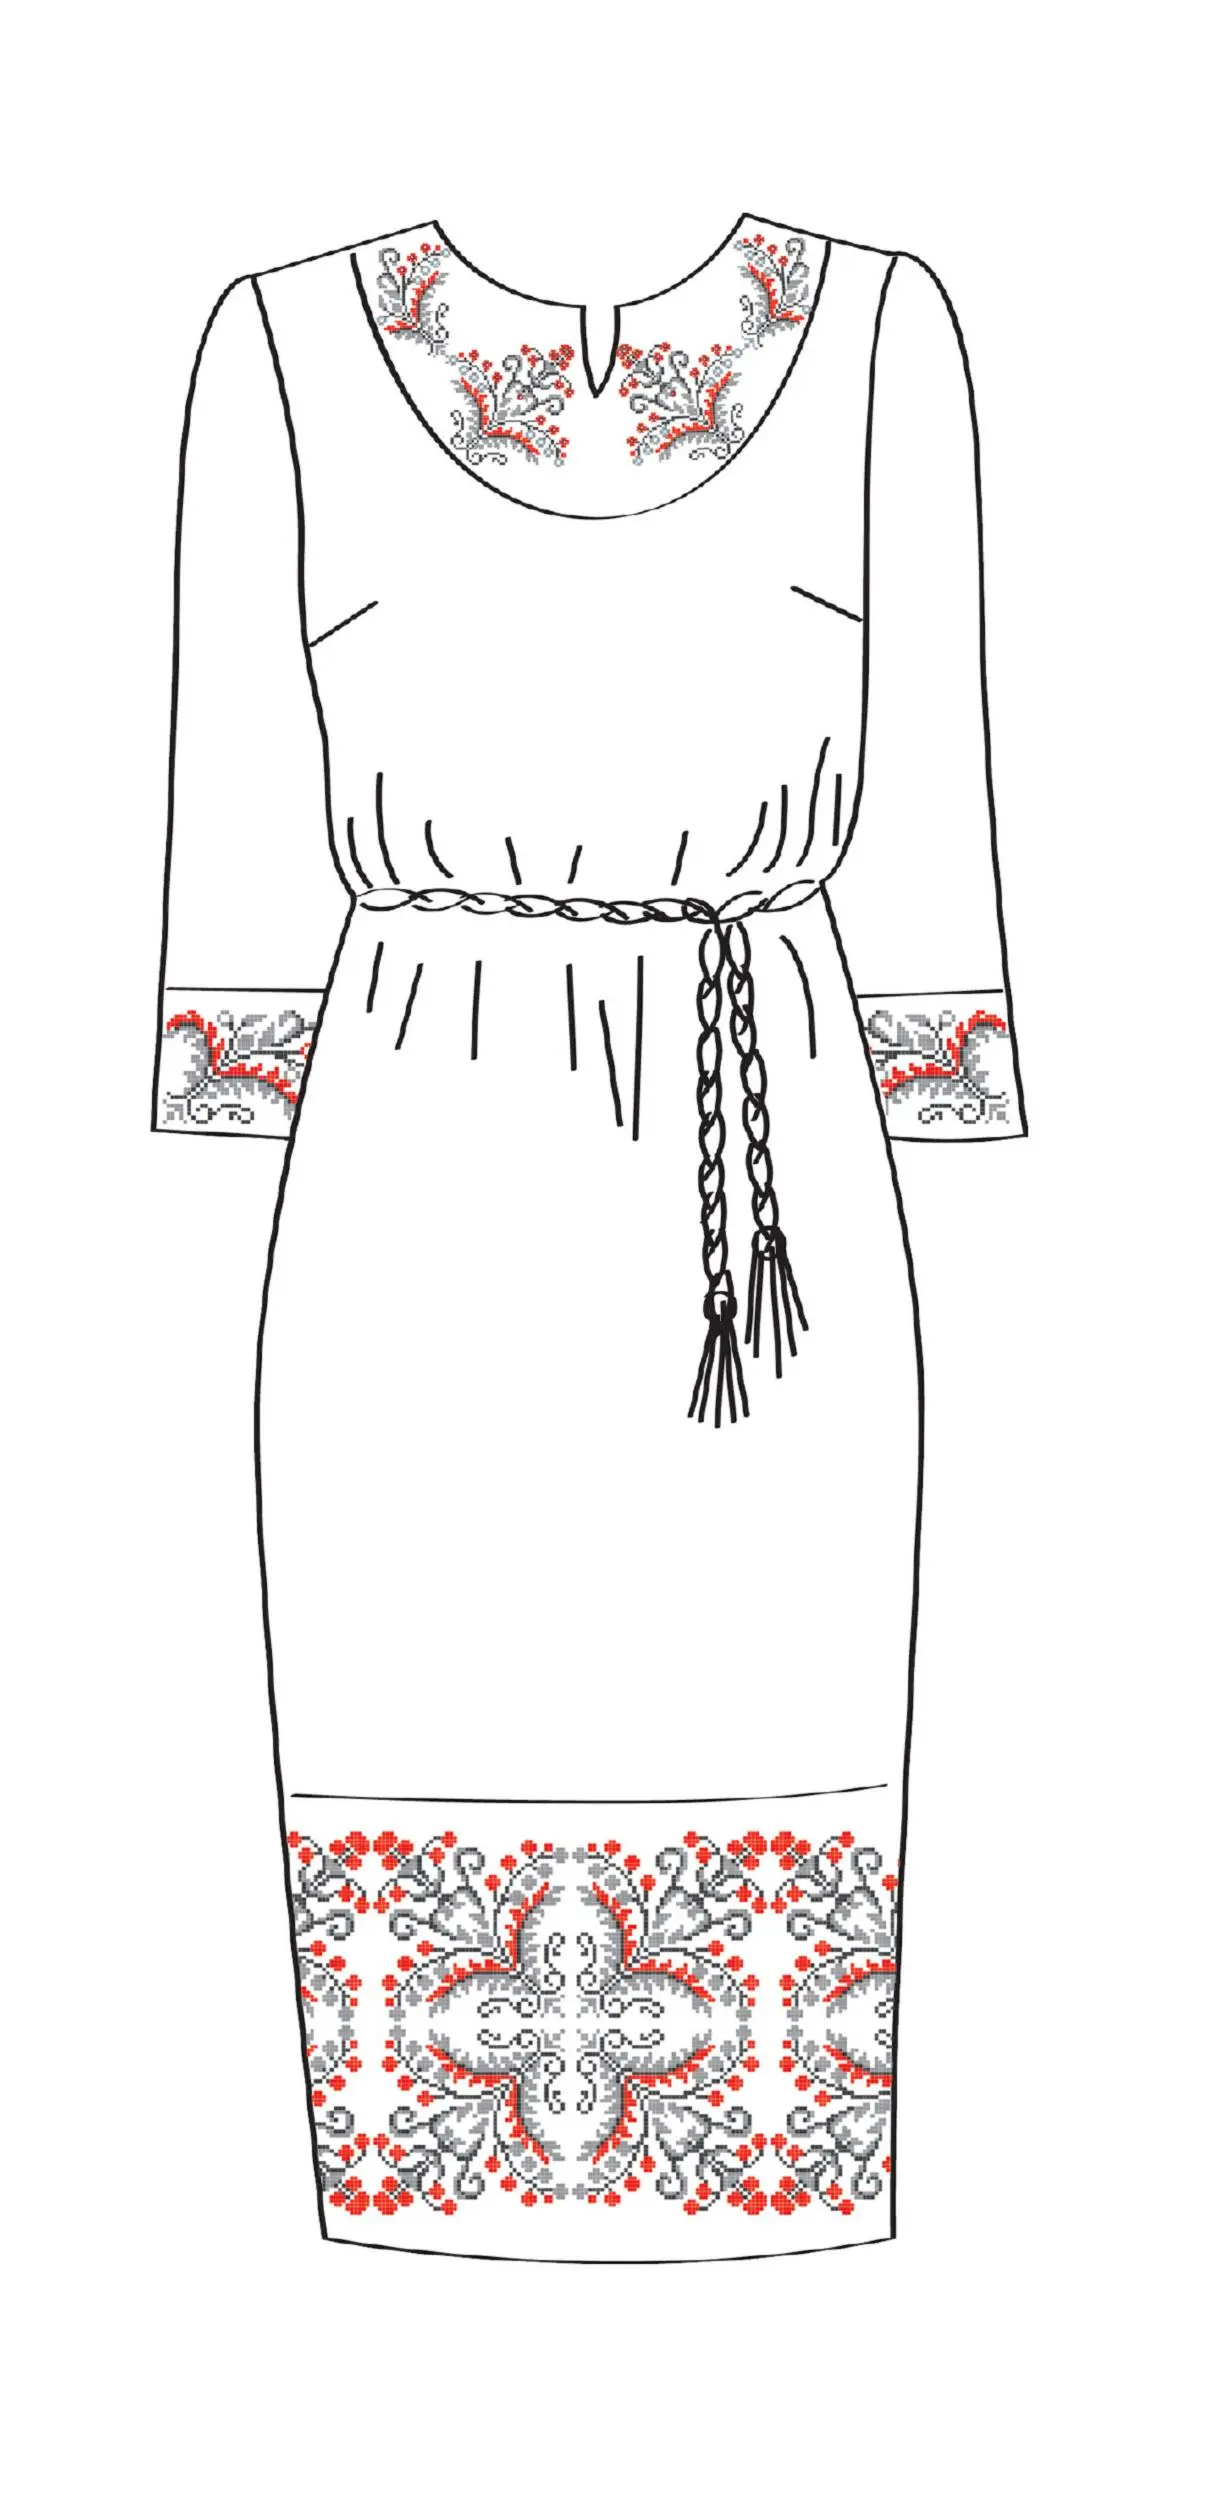 820-14/09 Плаття жіноче з поясом, біле, розмір 50